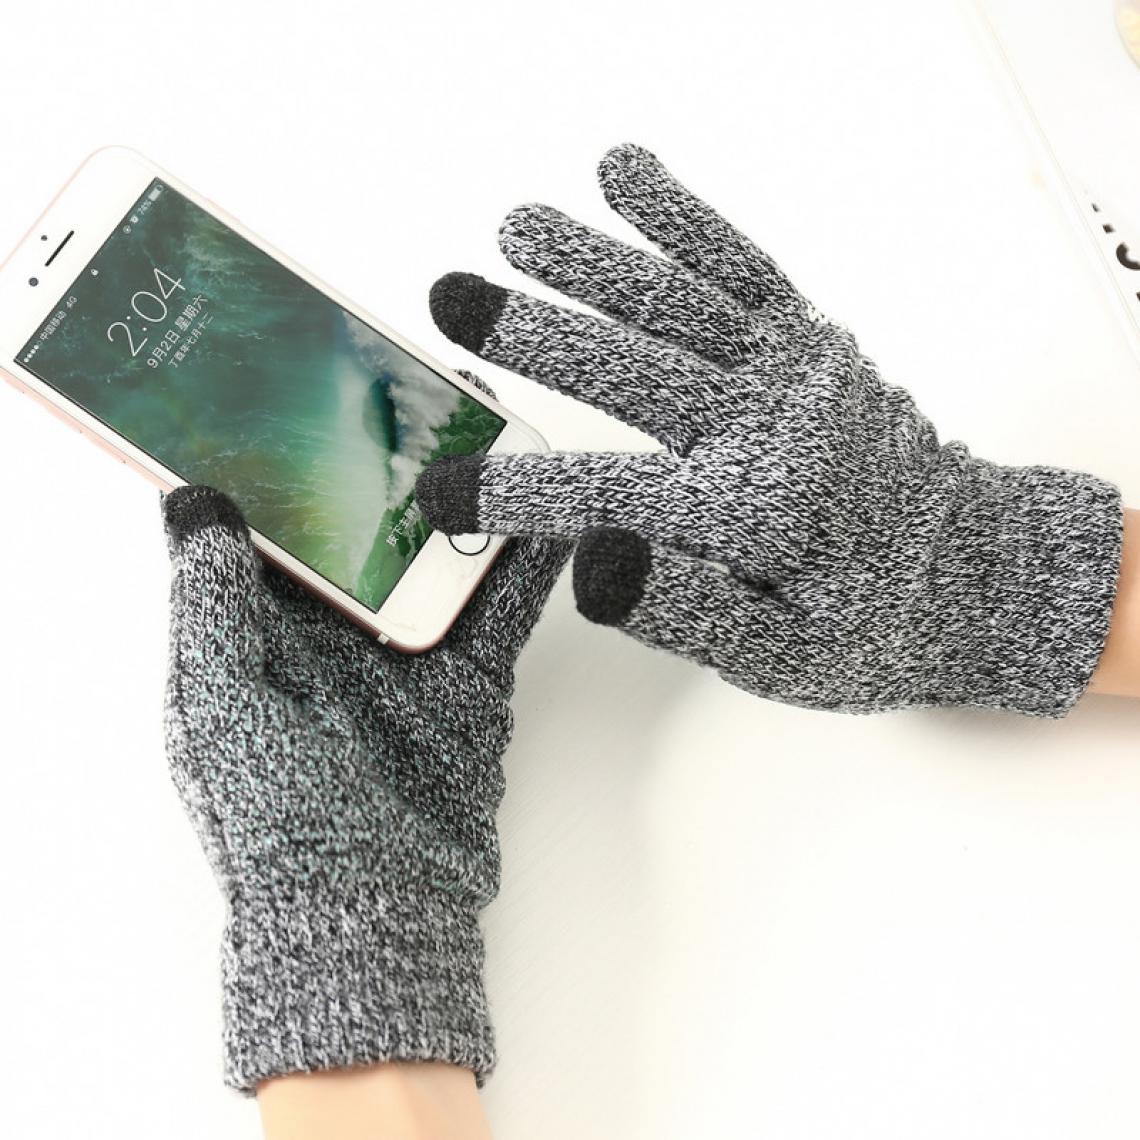 Shot - Gants Homme tactiles pour IPHONE X Smartphone Taille M 3 doigts Hiver (GRIS) - Autres accessoires smartphone